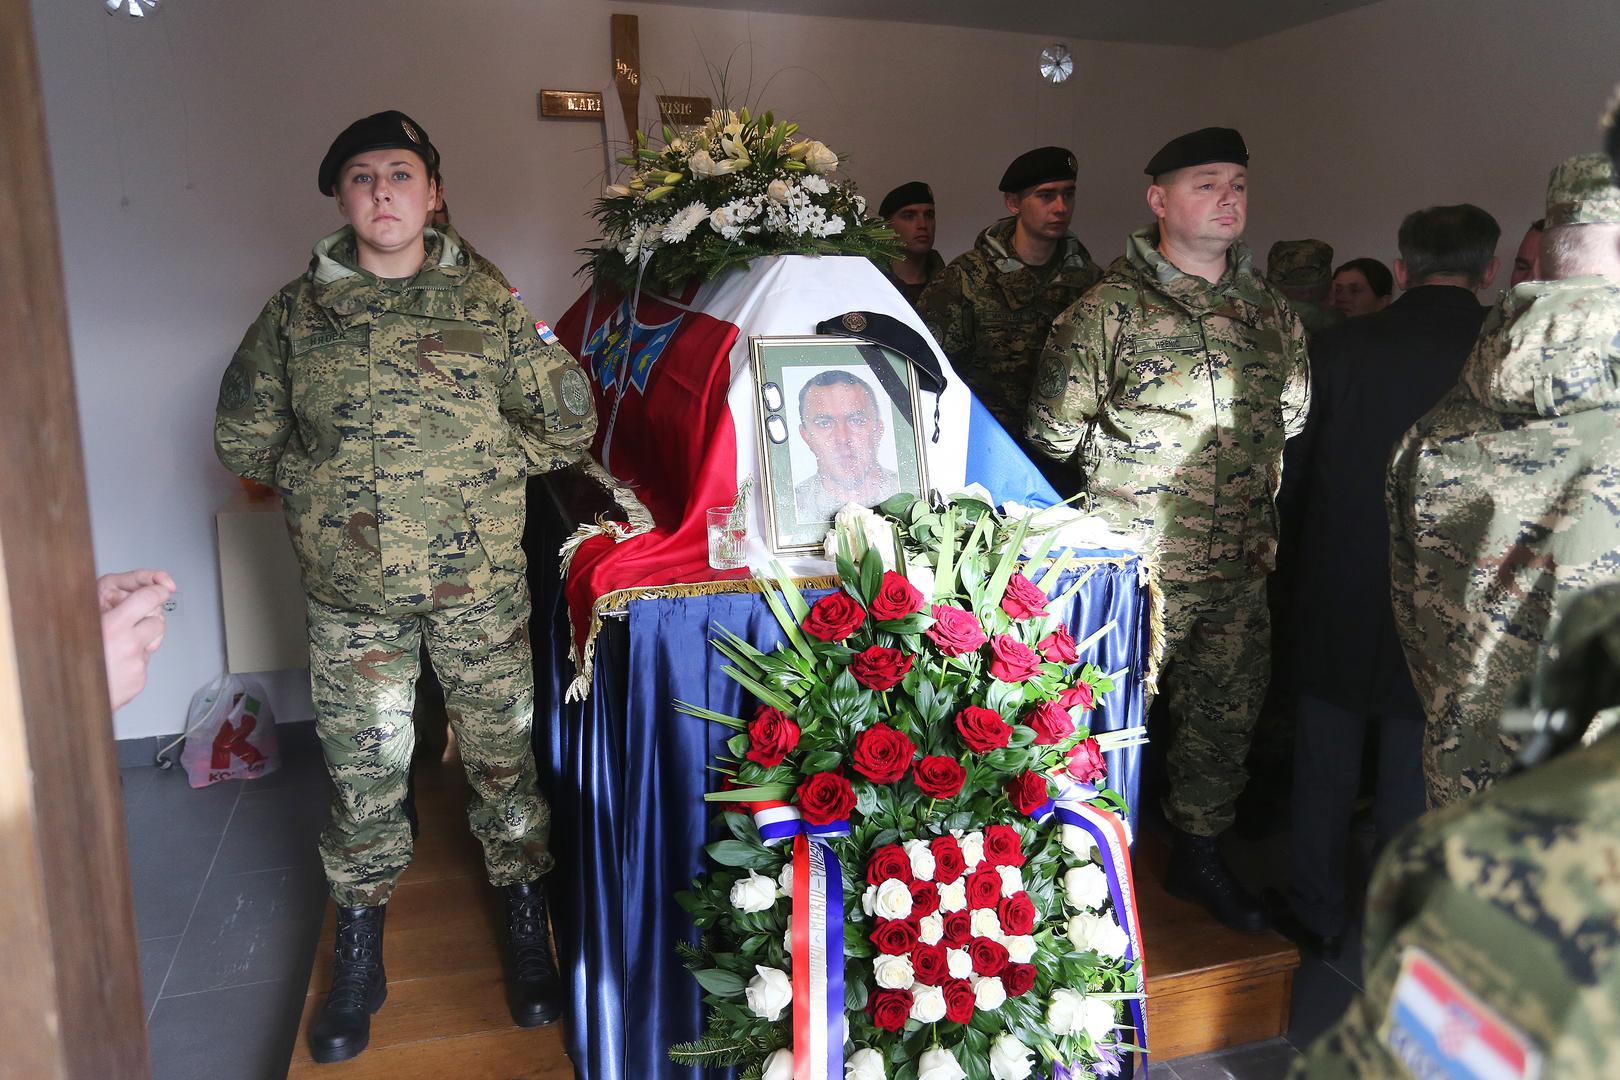 Pavišić je 12. prosinca preminuo u vojarni Rukla u Litvi gdje se nalazio kao pripadnik 1. Hrvatskog kontingenta u okviru aktivnosti ojačane prisutnosti NATO-a.